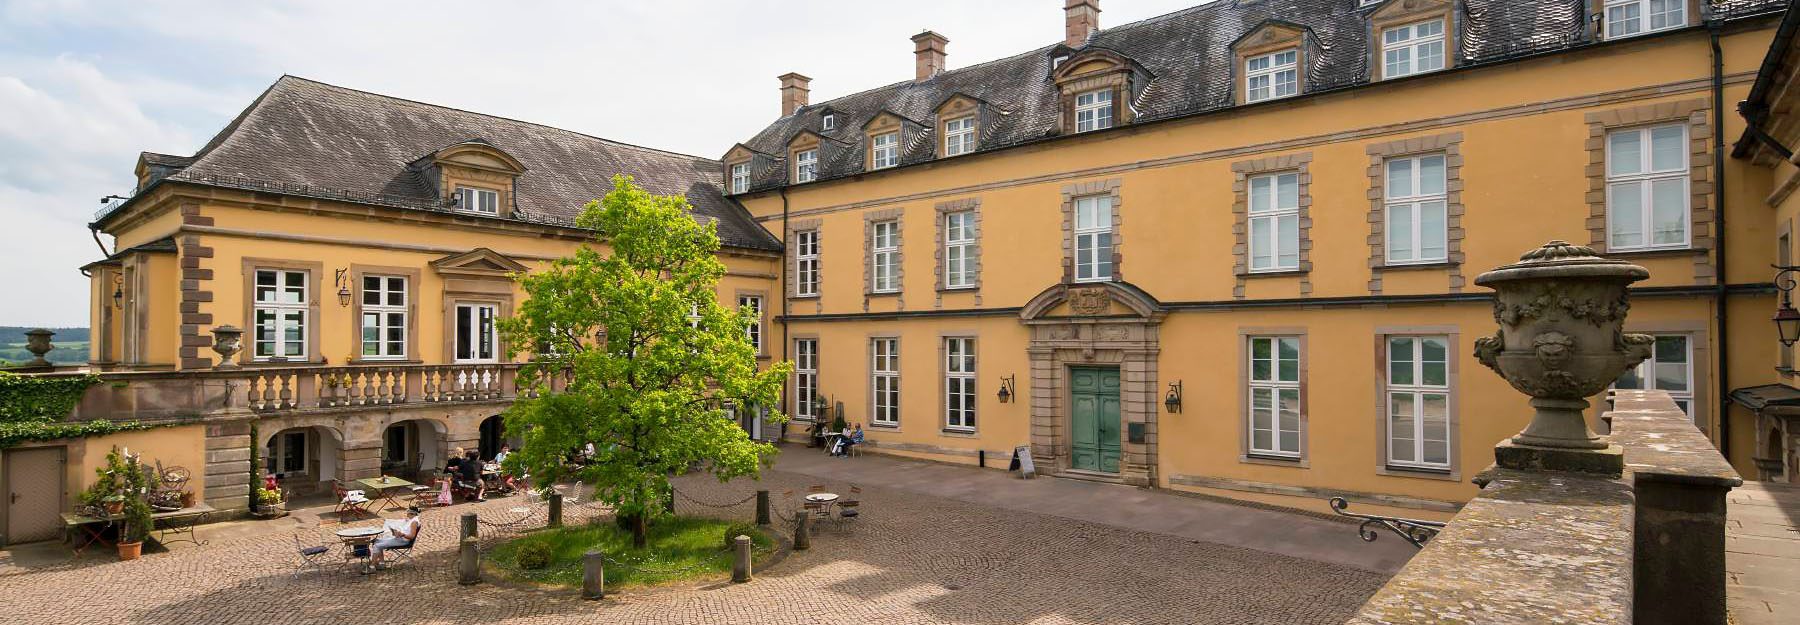 Innenhof Schloss Friedrichstein in Bad Wildungen